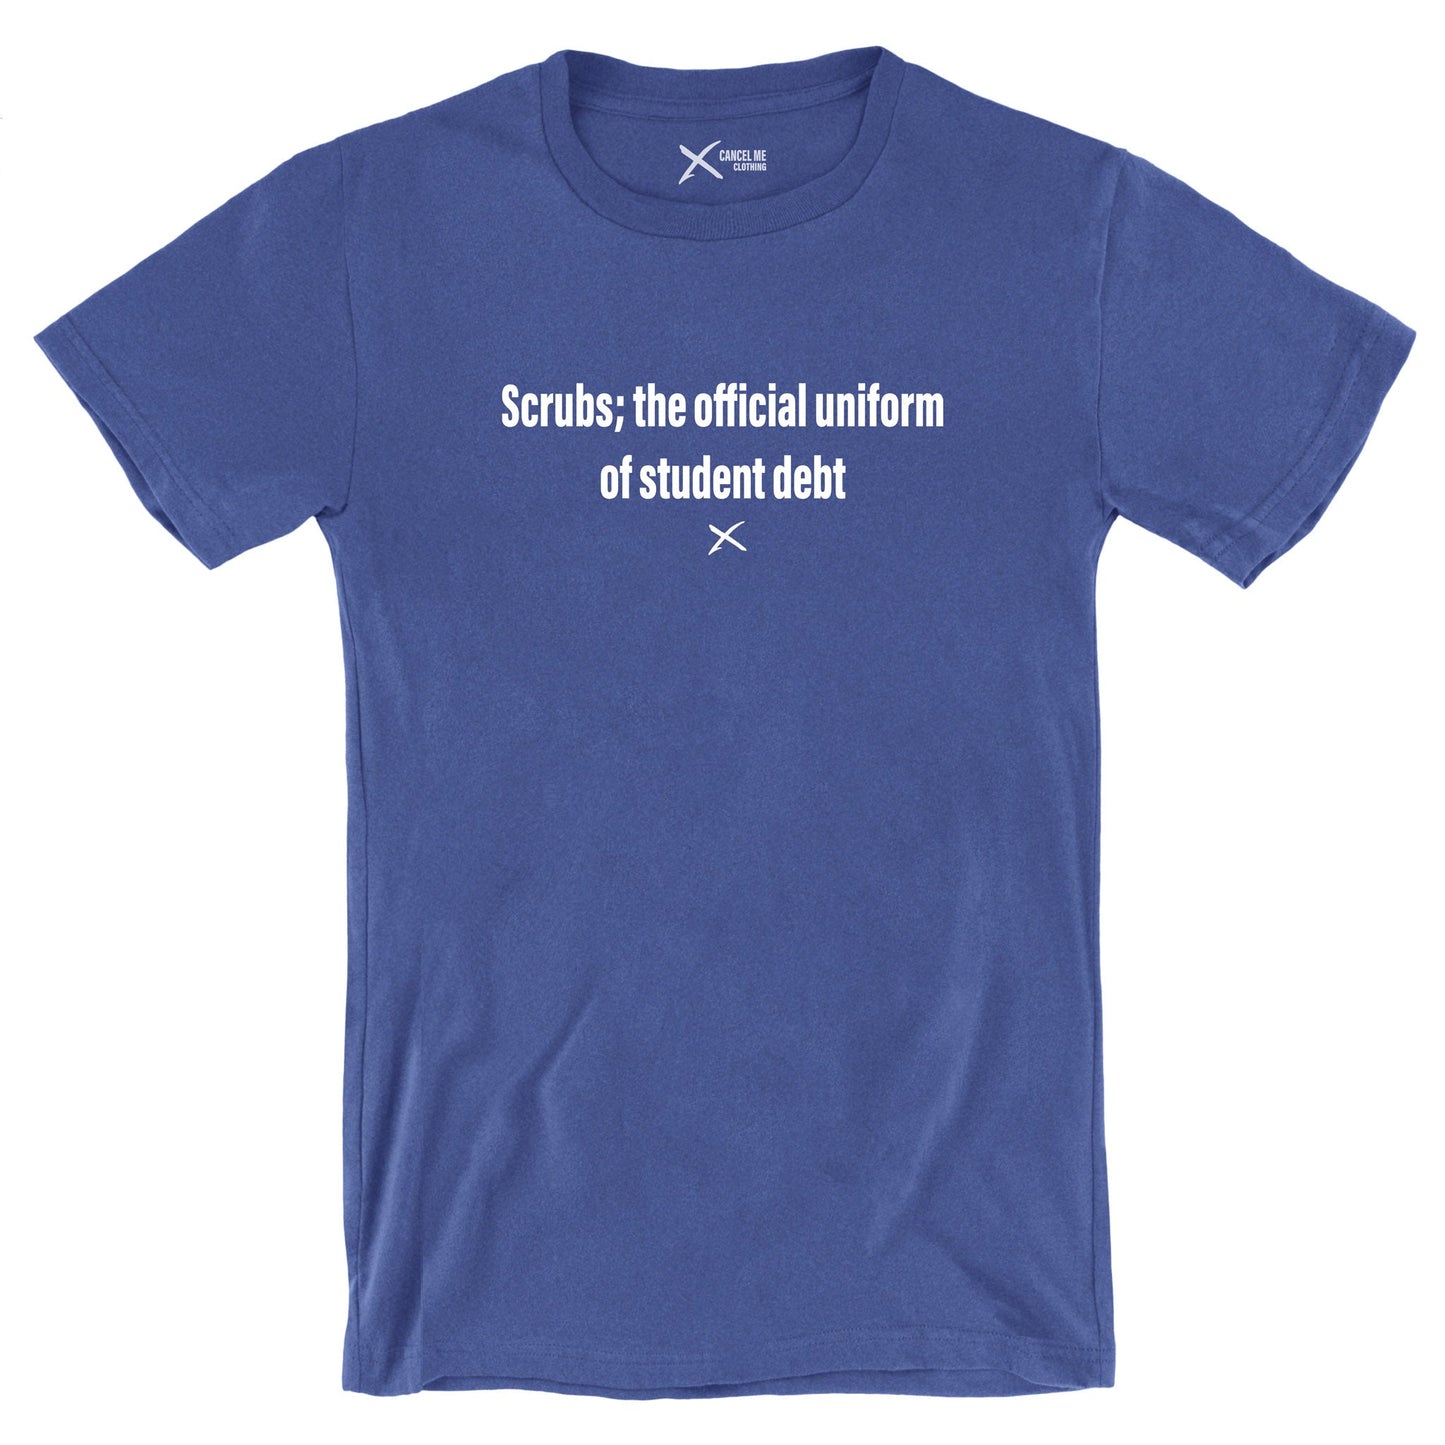 Scrubs; the official uniform of student debt - Shirt